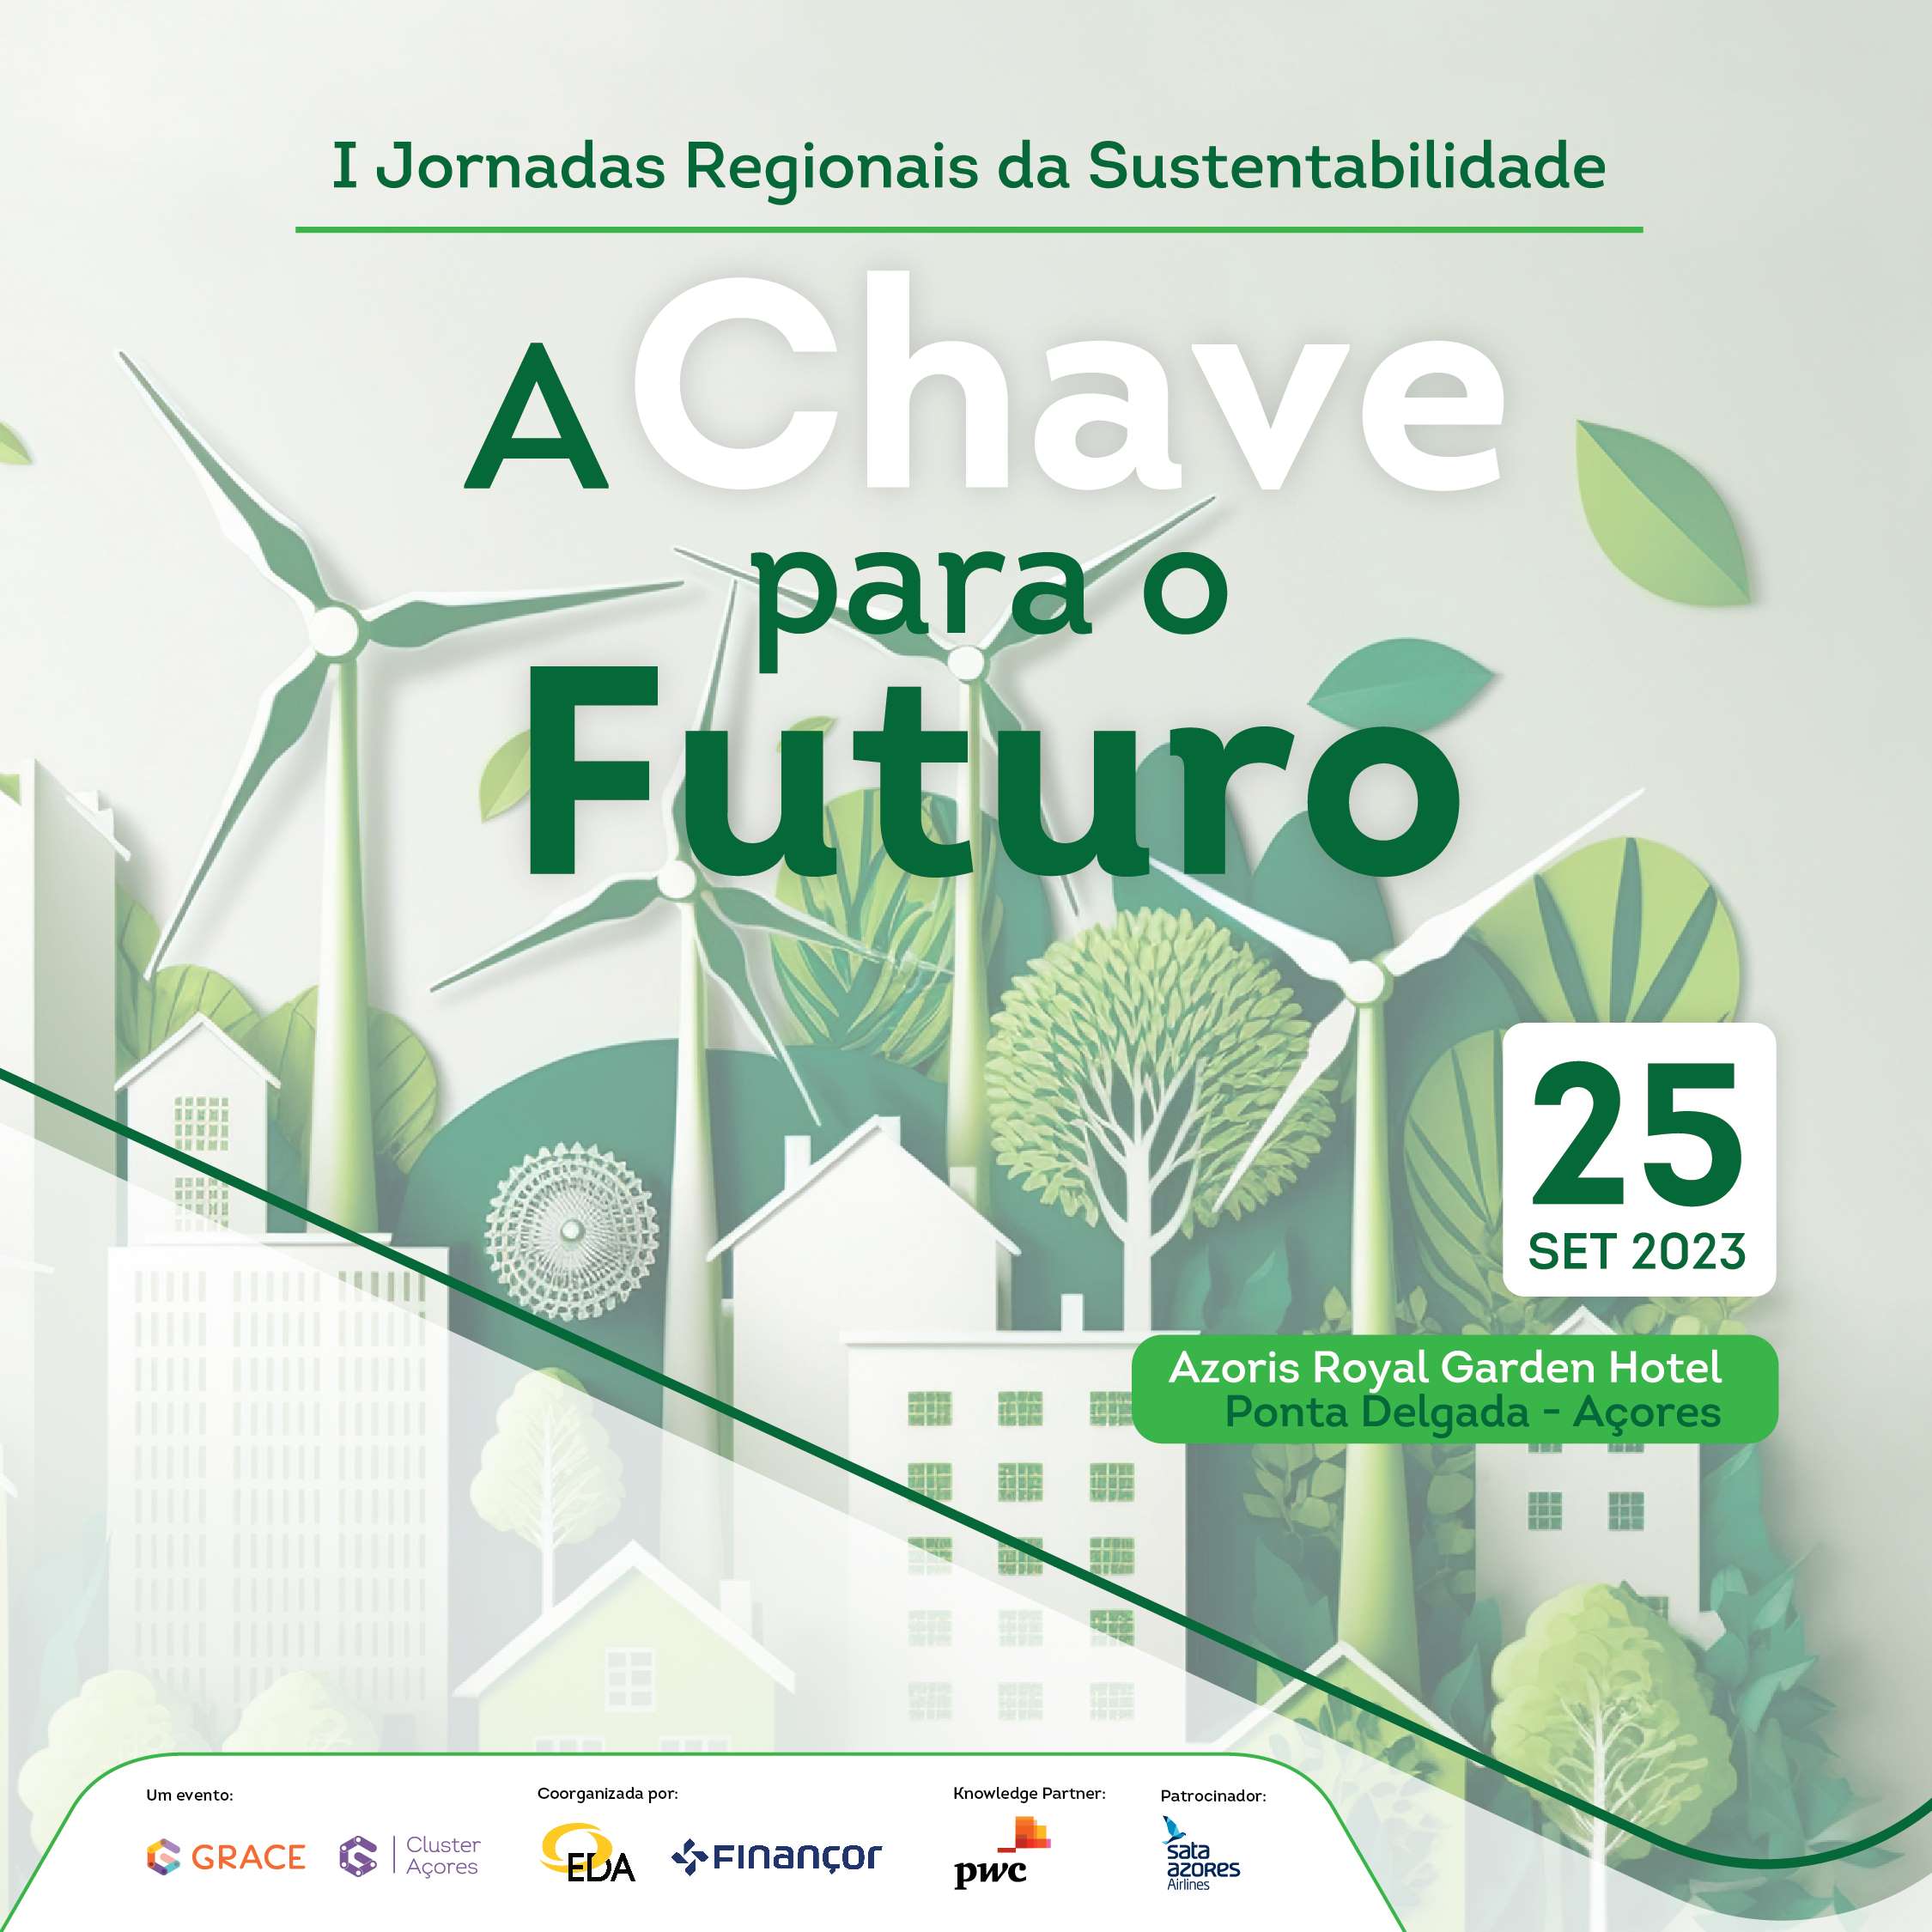 I Jornadas Regionais da Sustentabilidade – A chave para o Futuro | 25 setembro 2023